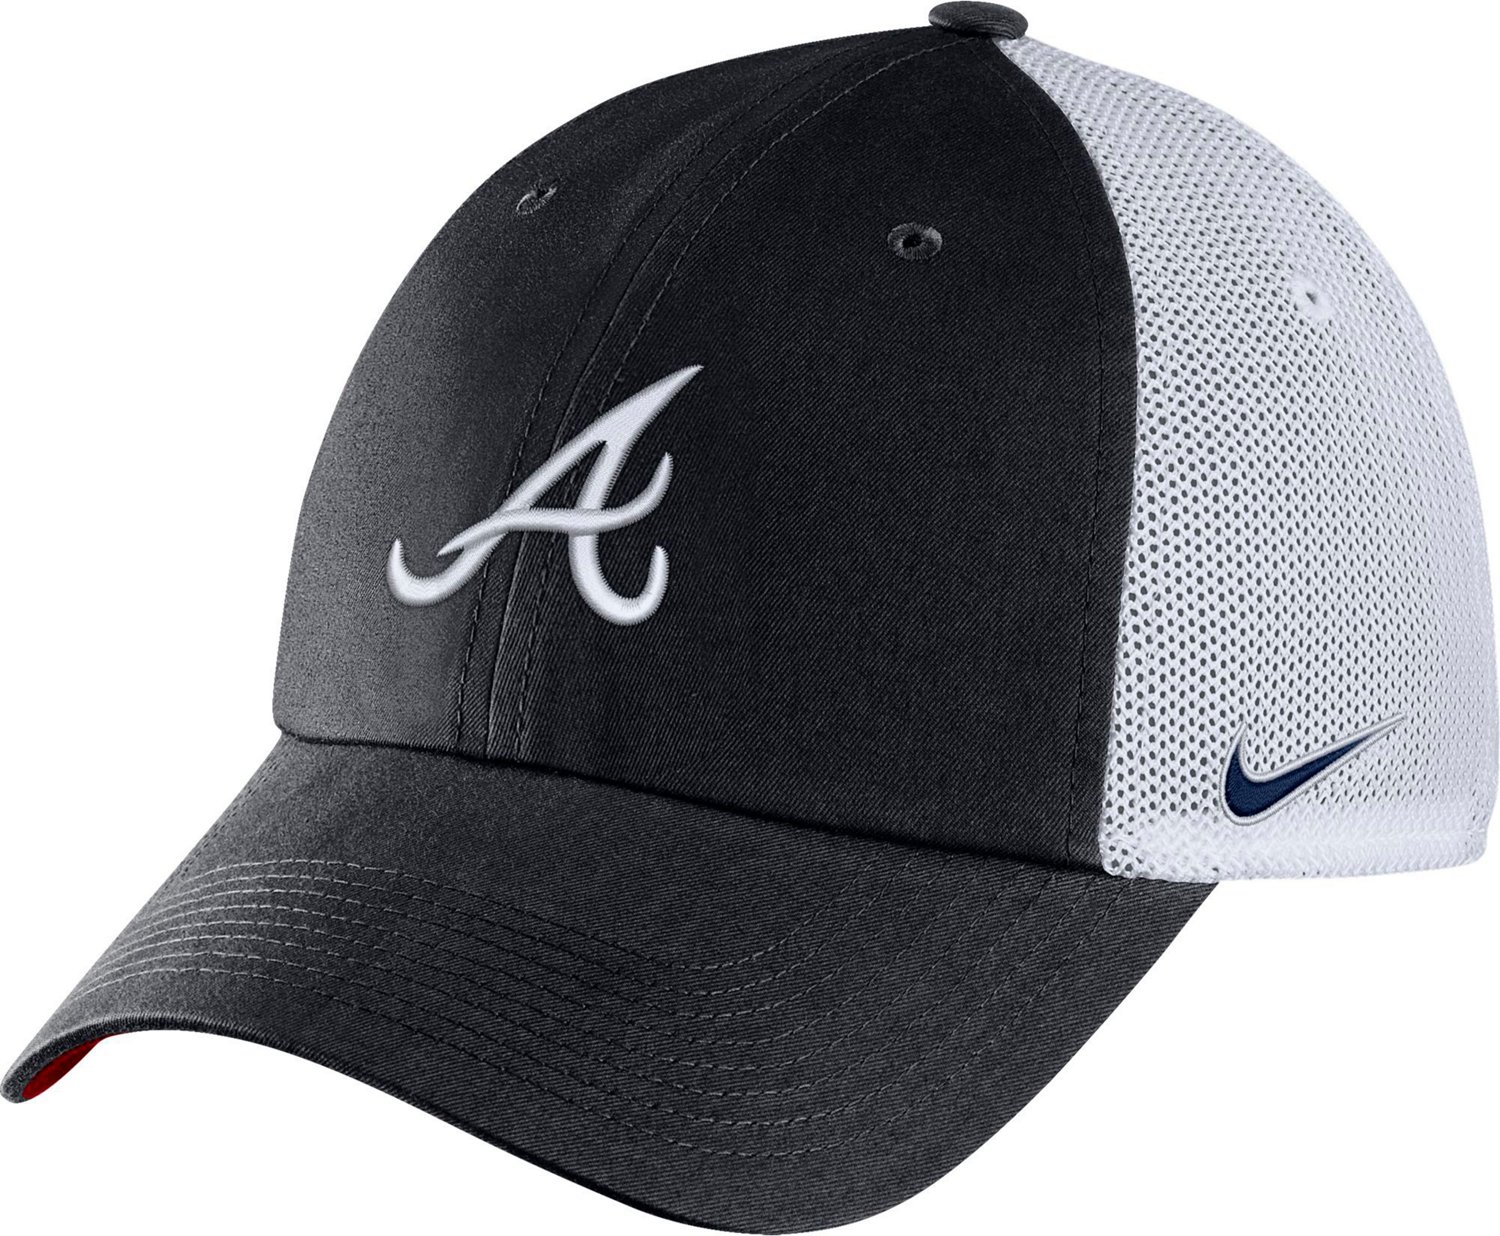 Atlanta Swoosh Baseball Cap